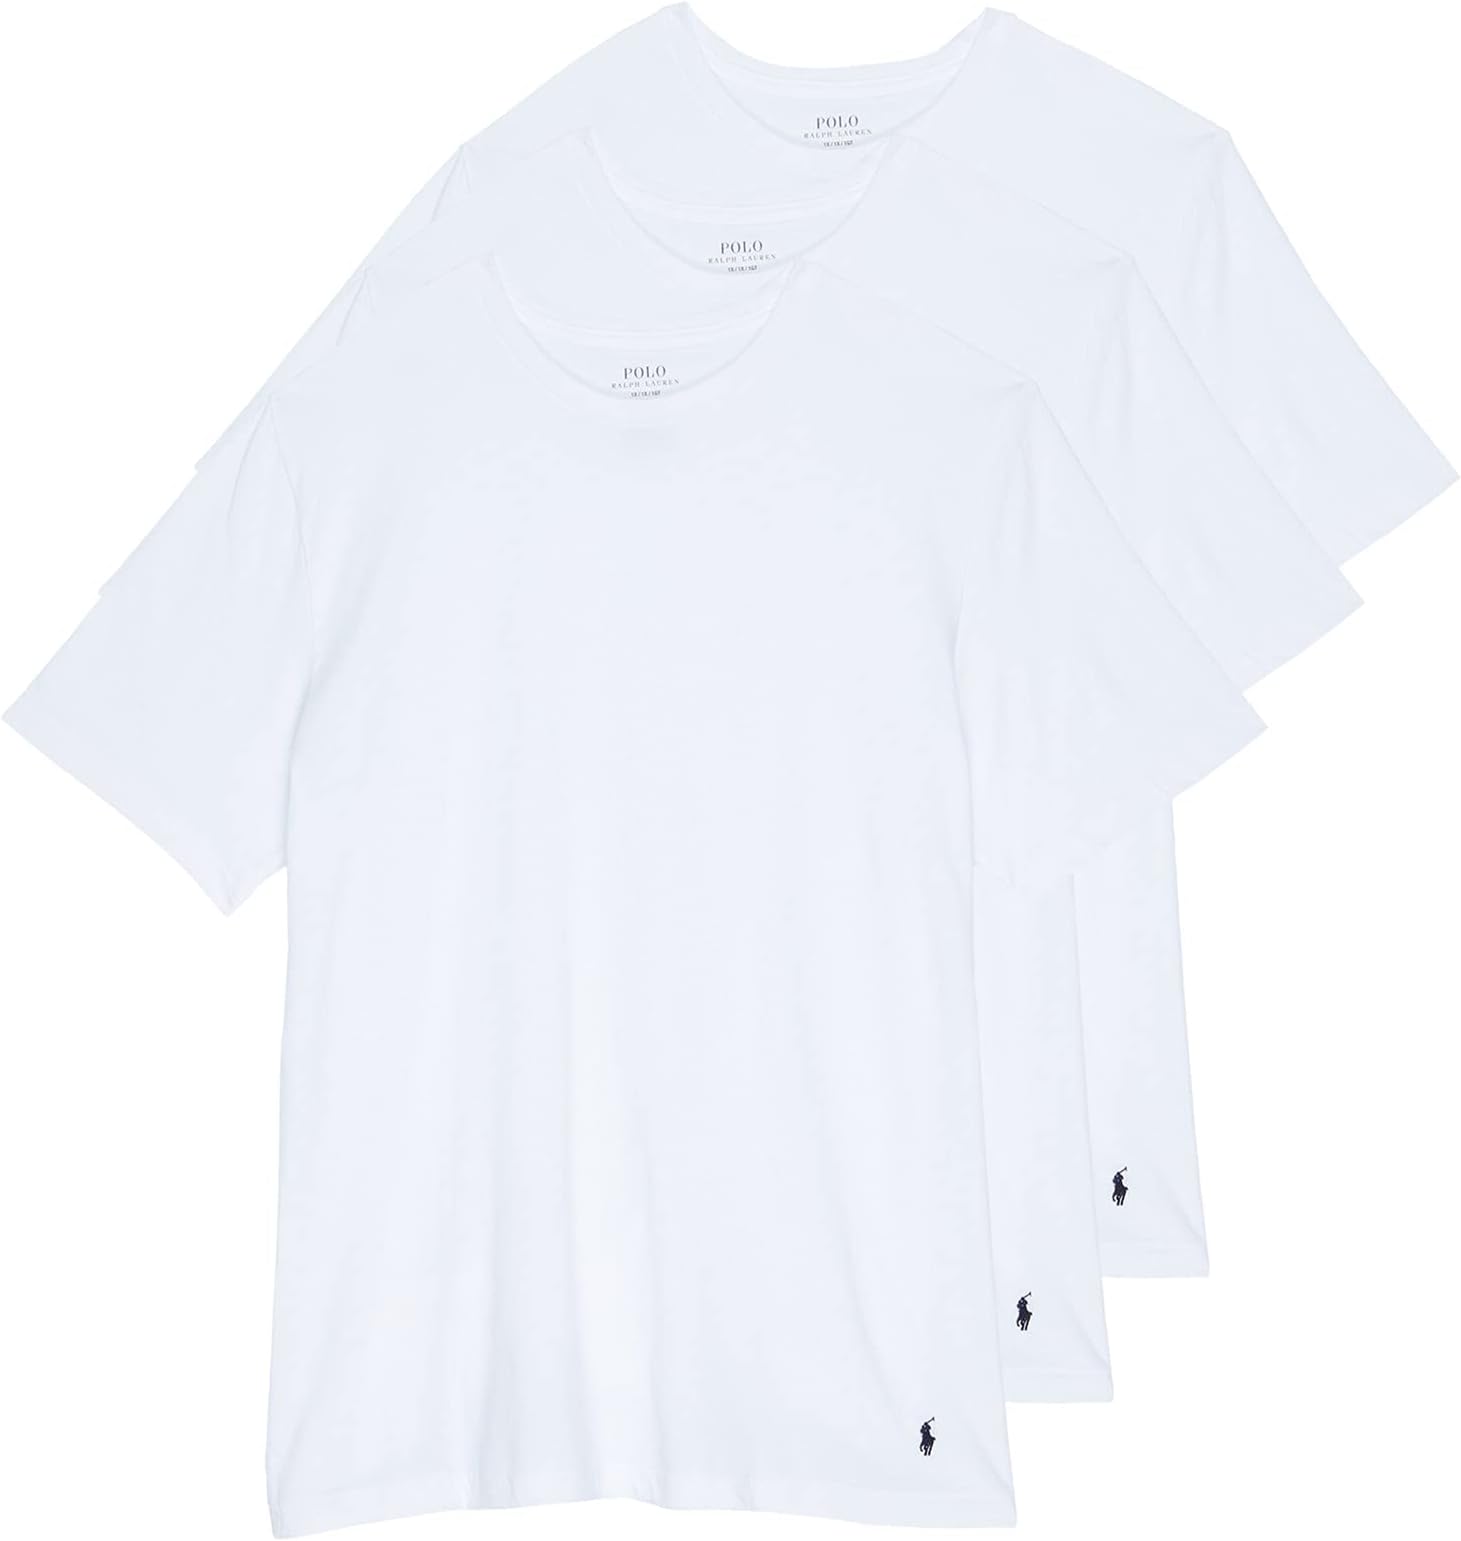 Комплект из 3 футболок Big Crew Polo Ralph Lauren, белый